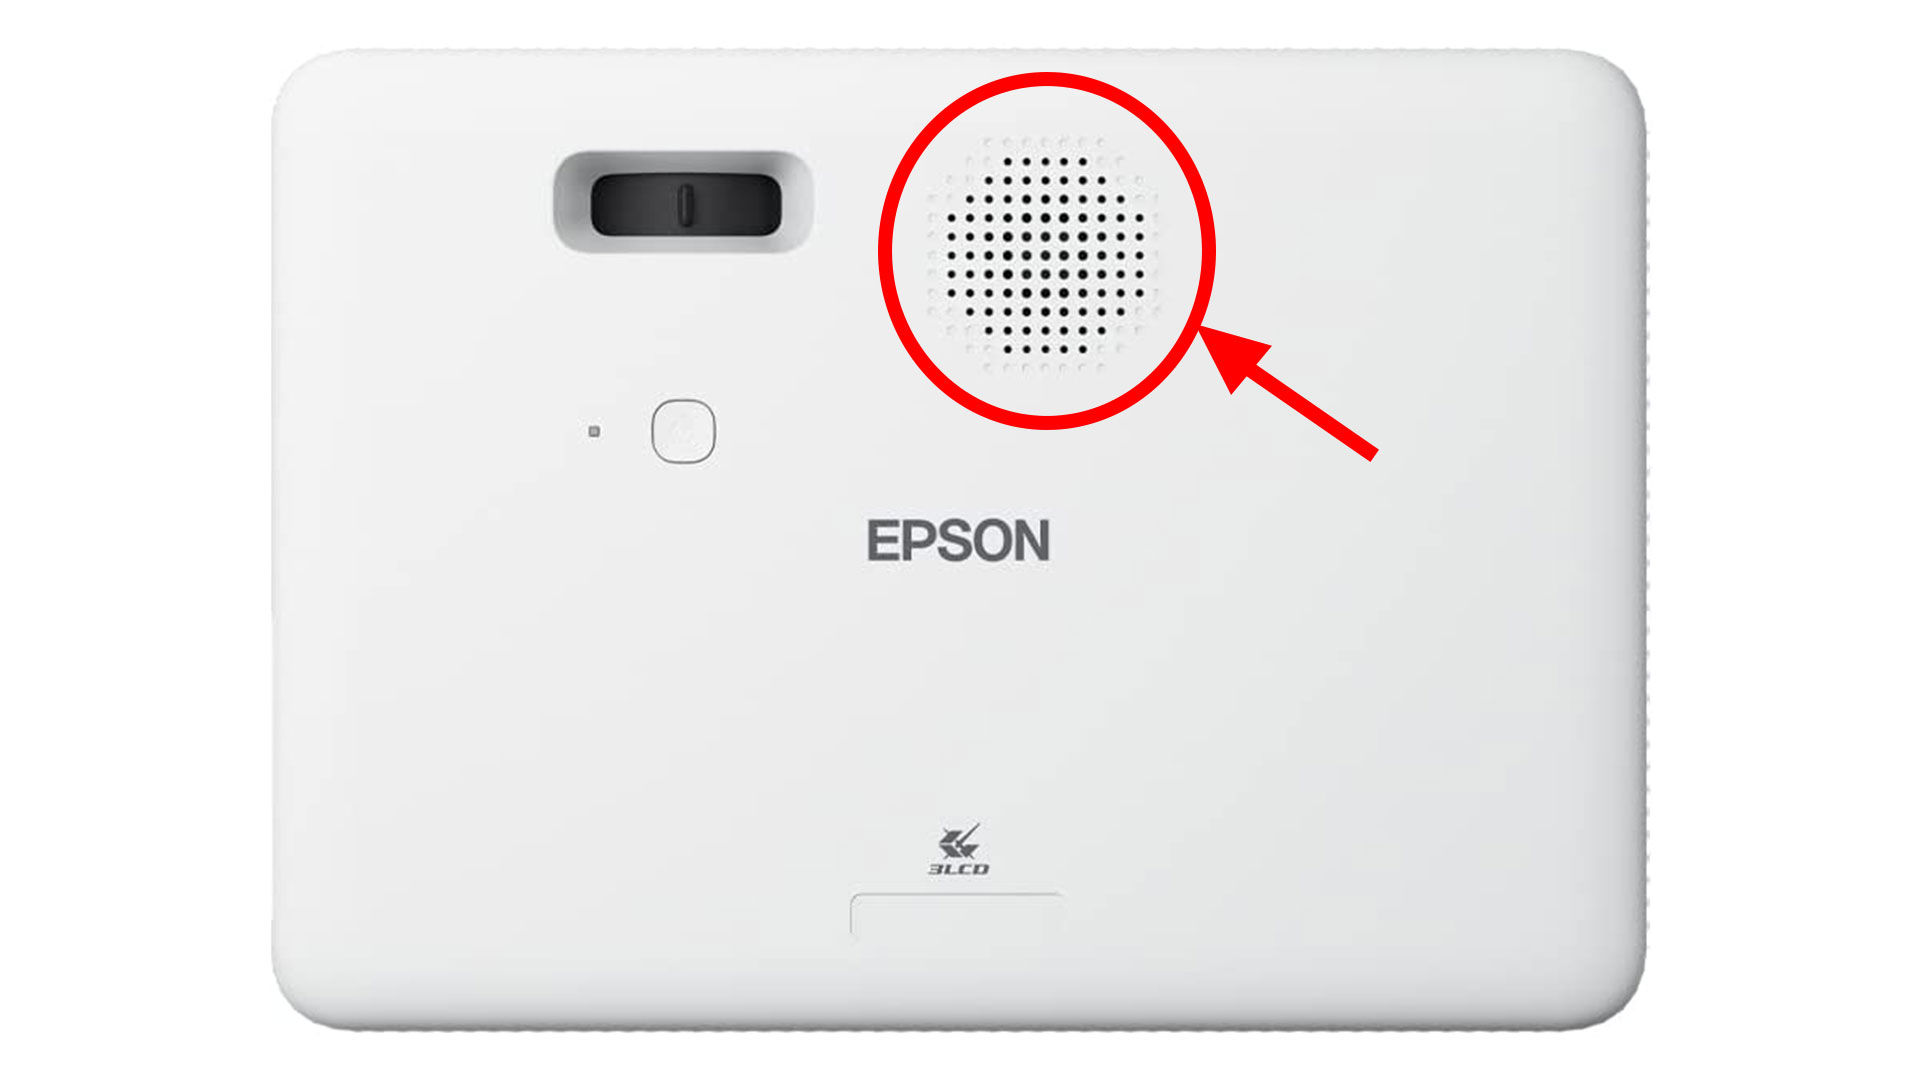 Epson Epiqvision Flex Co-W01 Speaker - Projector Reviews - Image